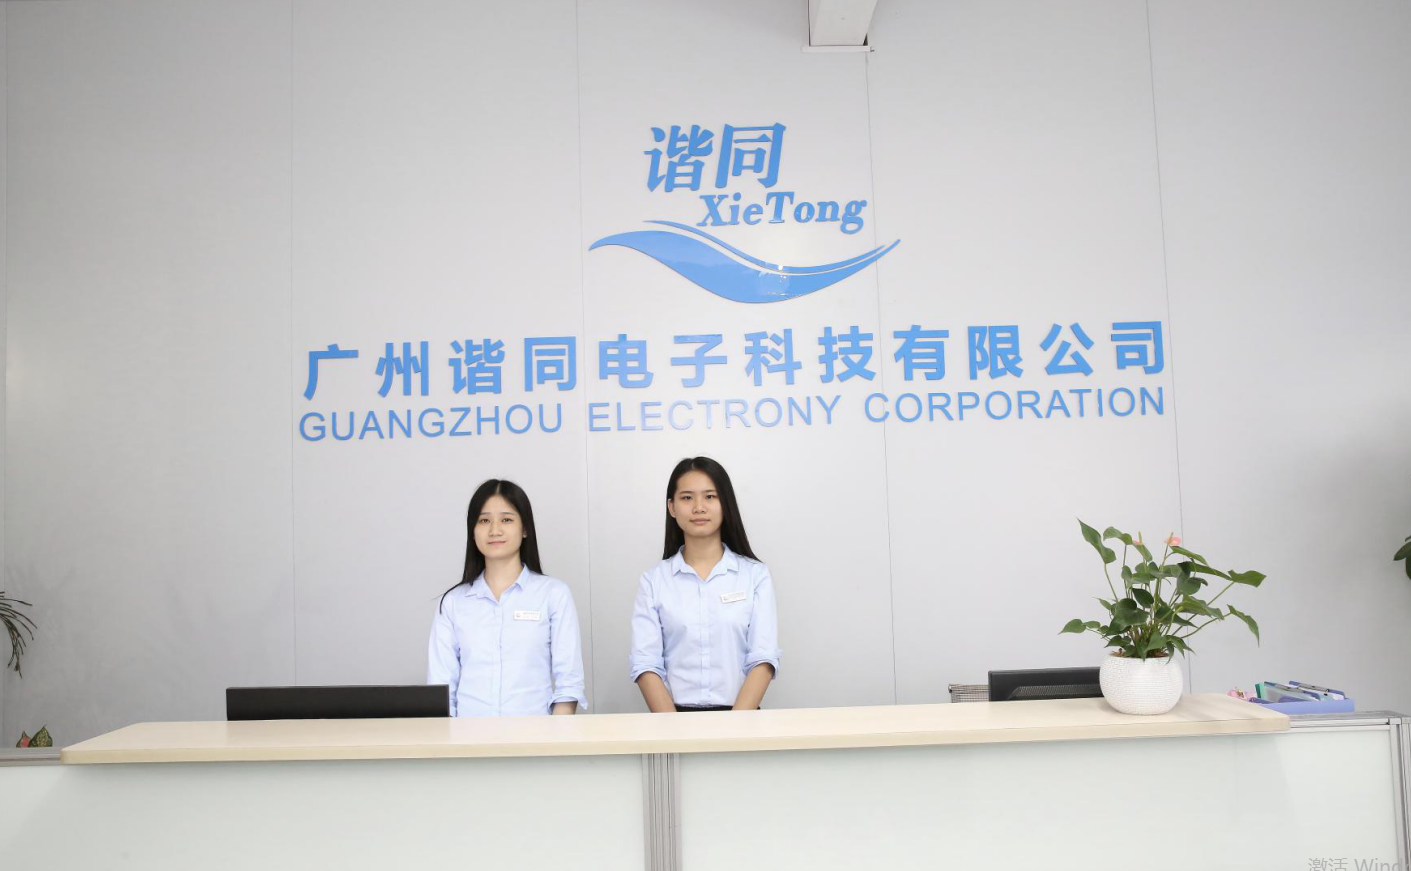 GuangZhou Electrony Corporation